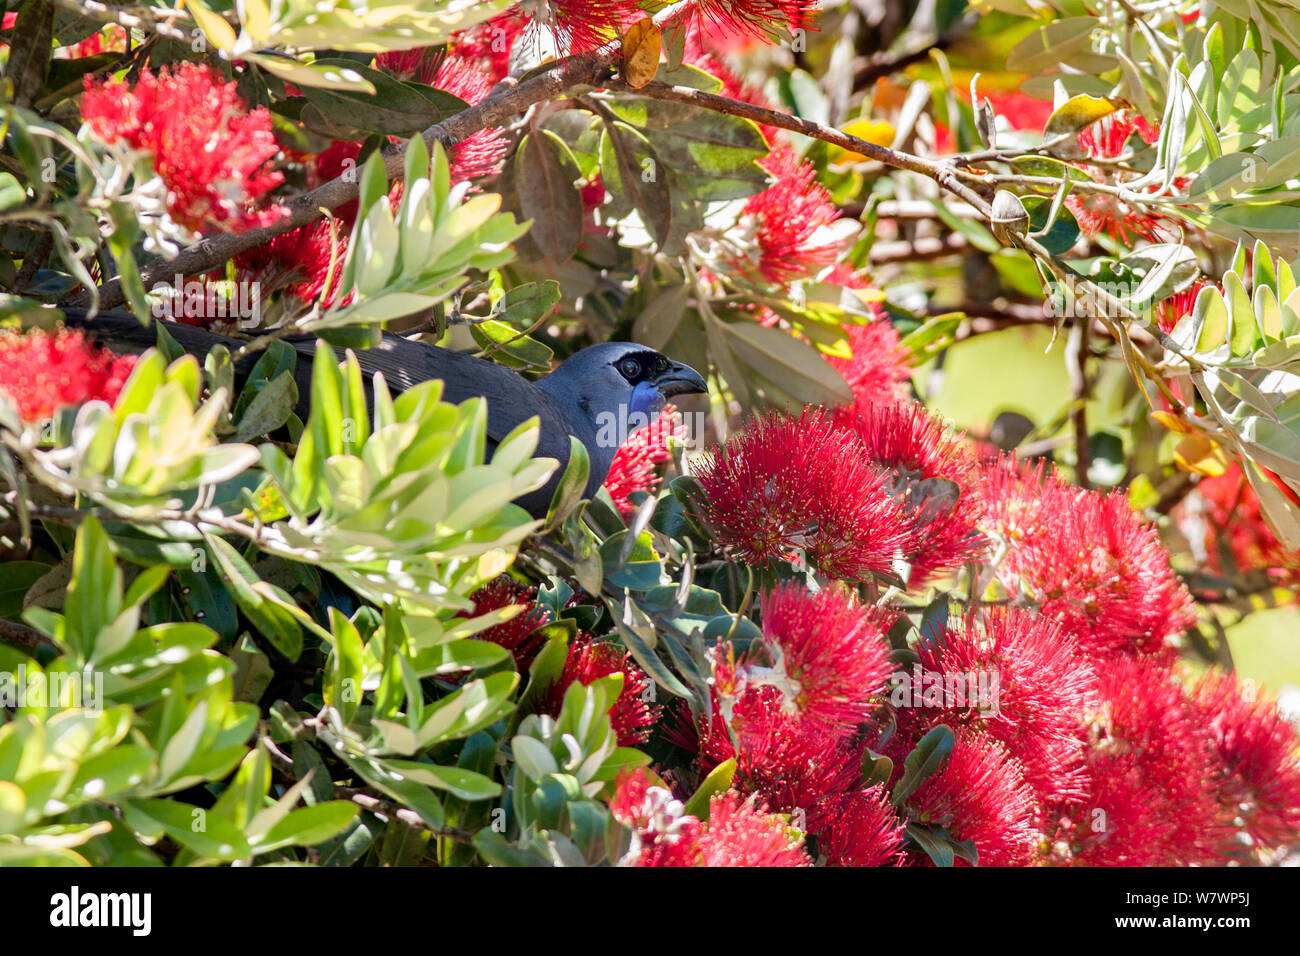 Des profils kokako (Callaeas wilsoni) perché dans un Arbre Pohutukawa floraison (Metrosideros excelsa) et se nourrissent de nectar. Tiritiri Matangi Island, Auckland, Nouvelle-Zélande, décembre. Les espèces en voie de disparition. Banque D'Images